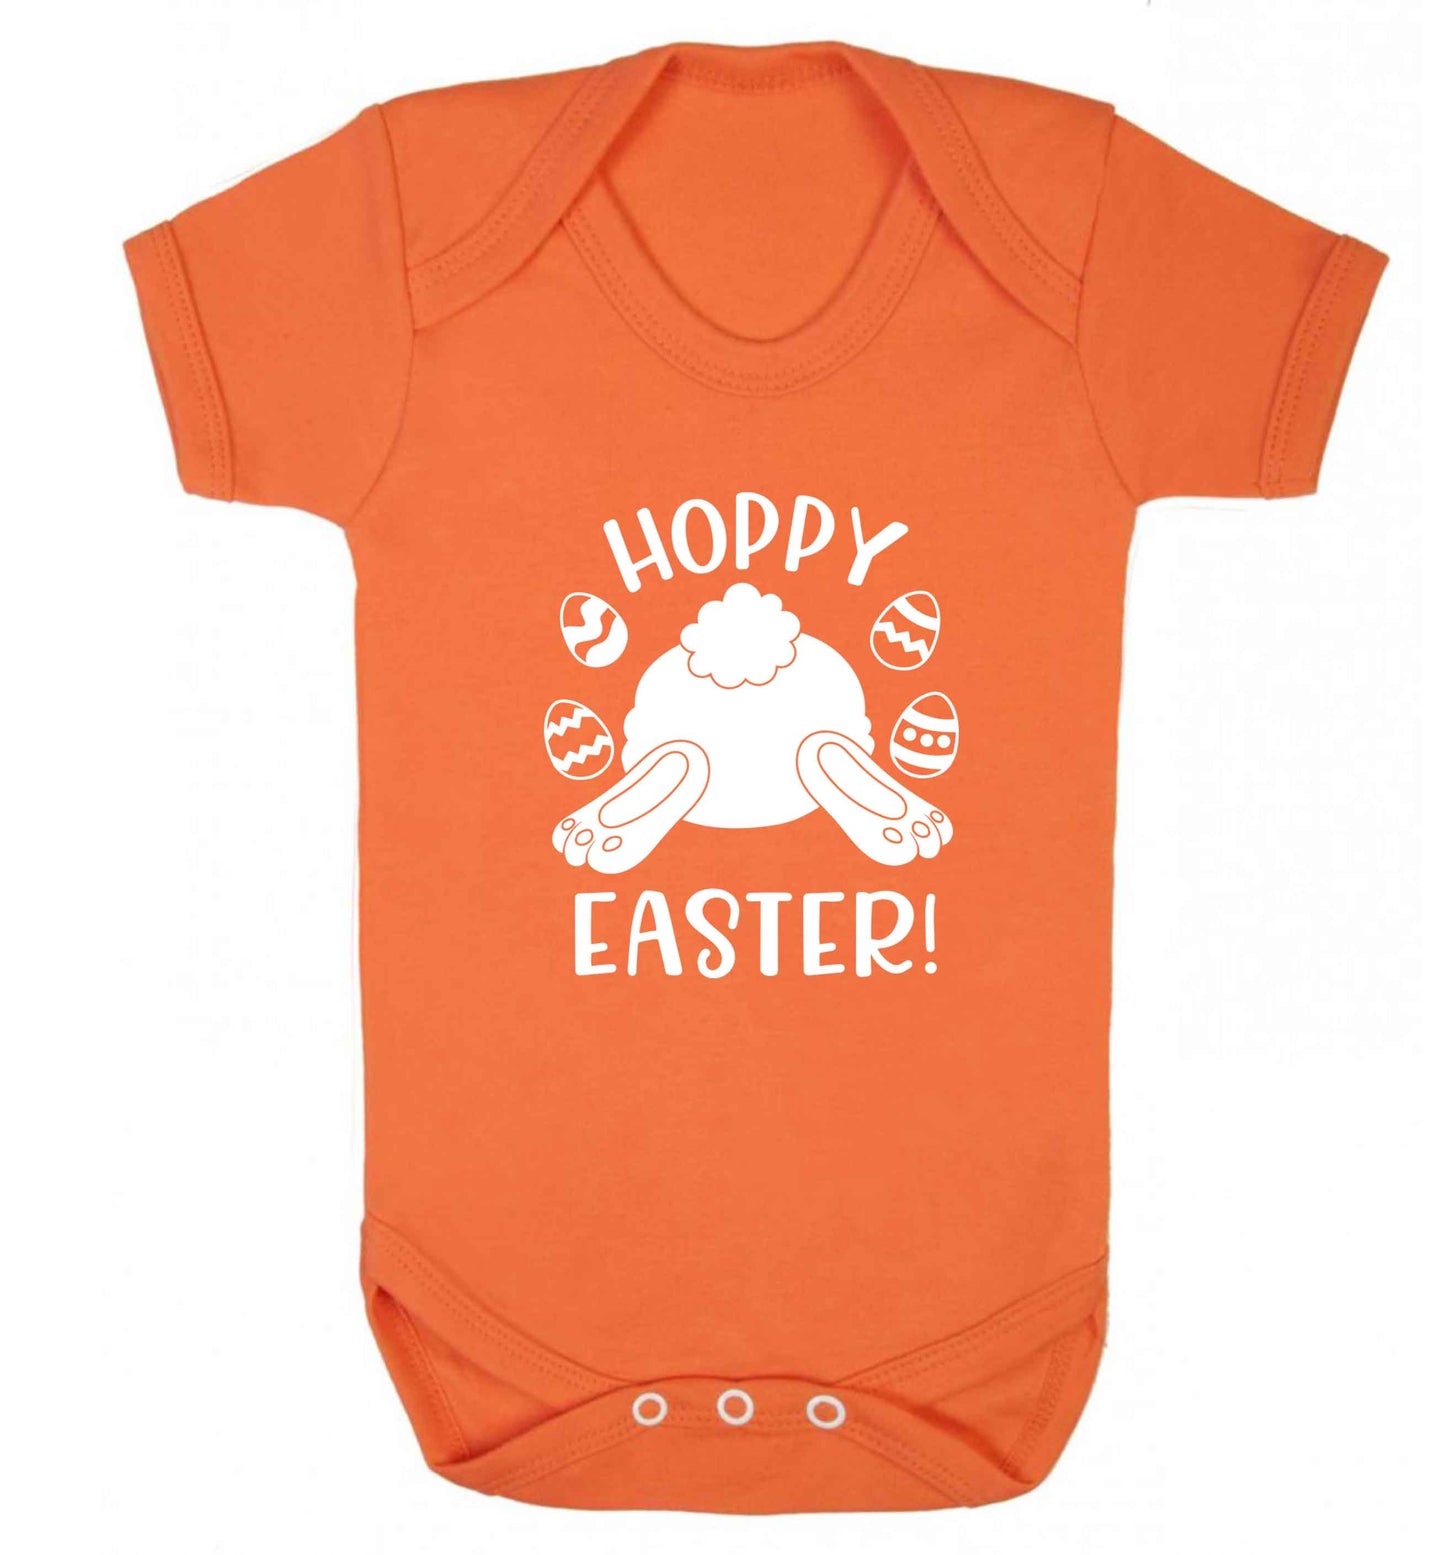 Hoppy Easter baby vest orange 18-24 months